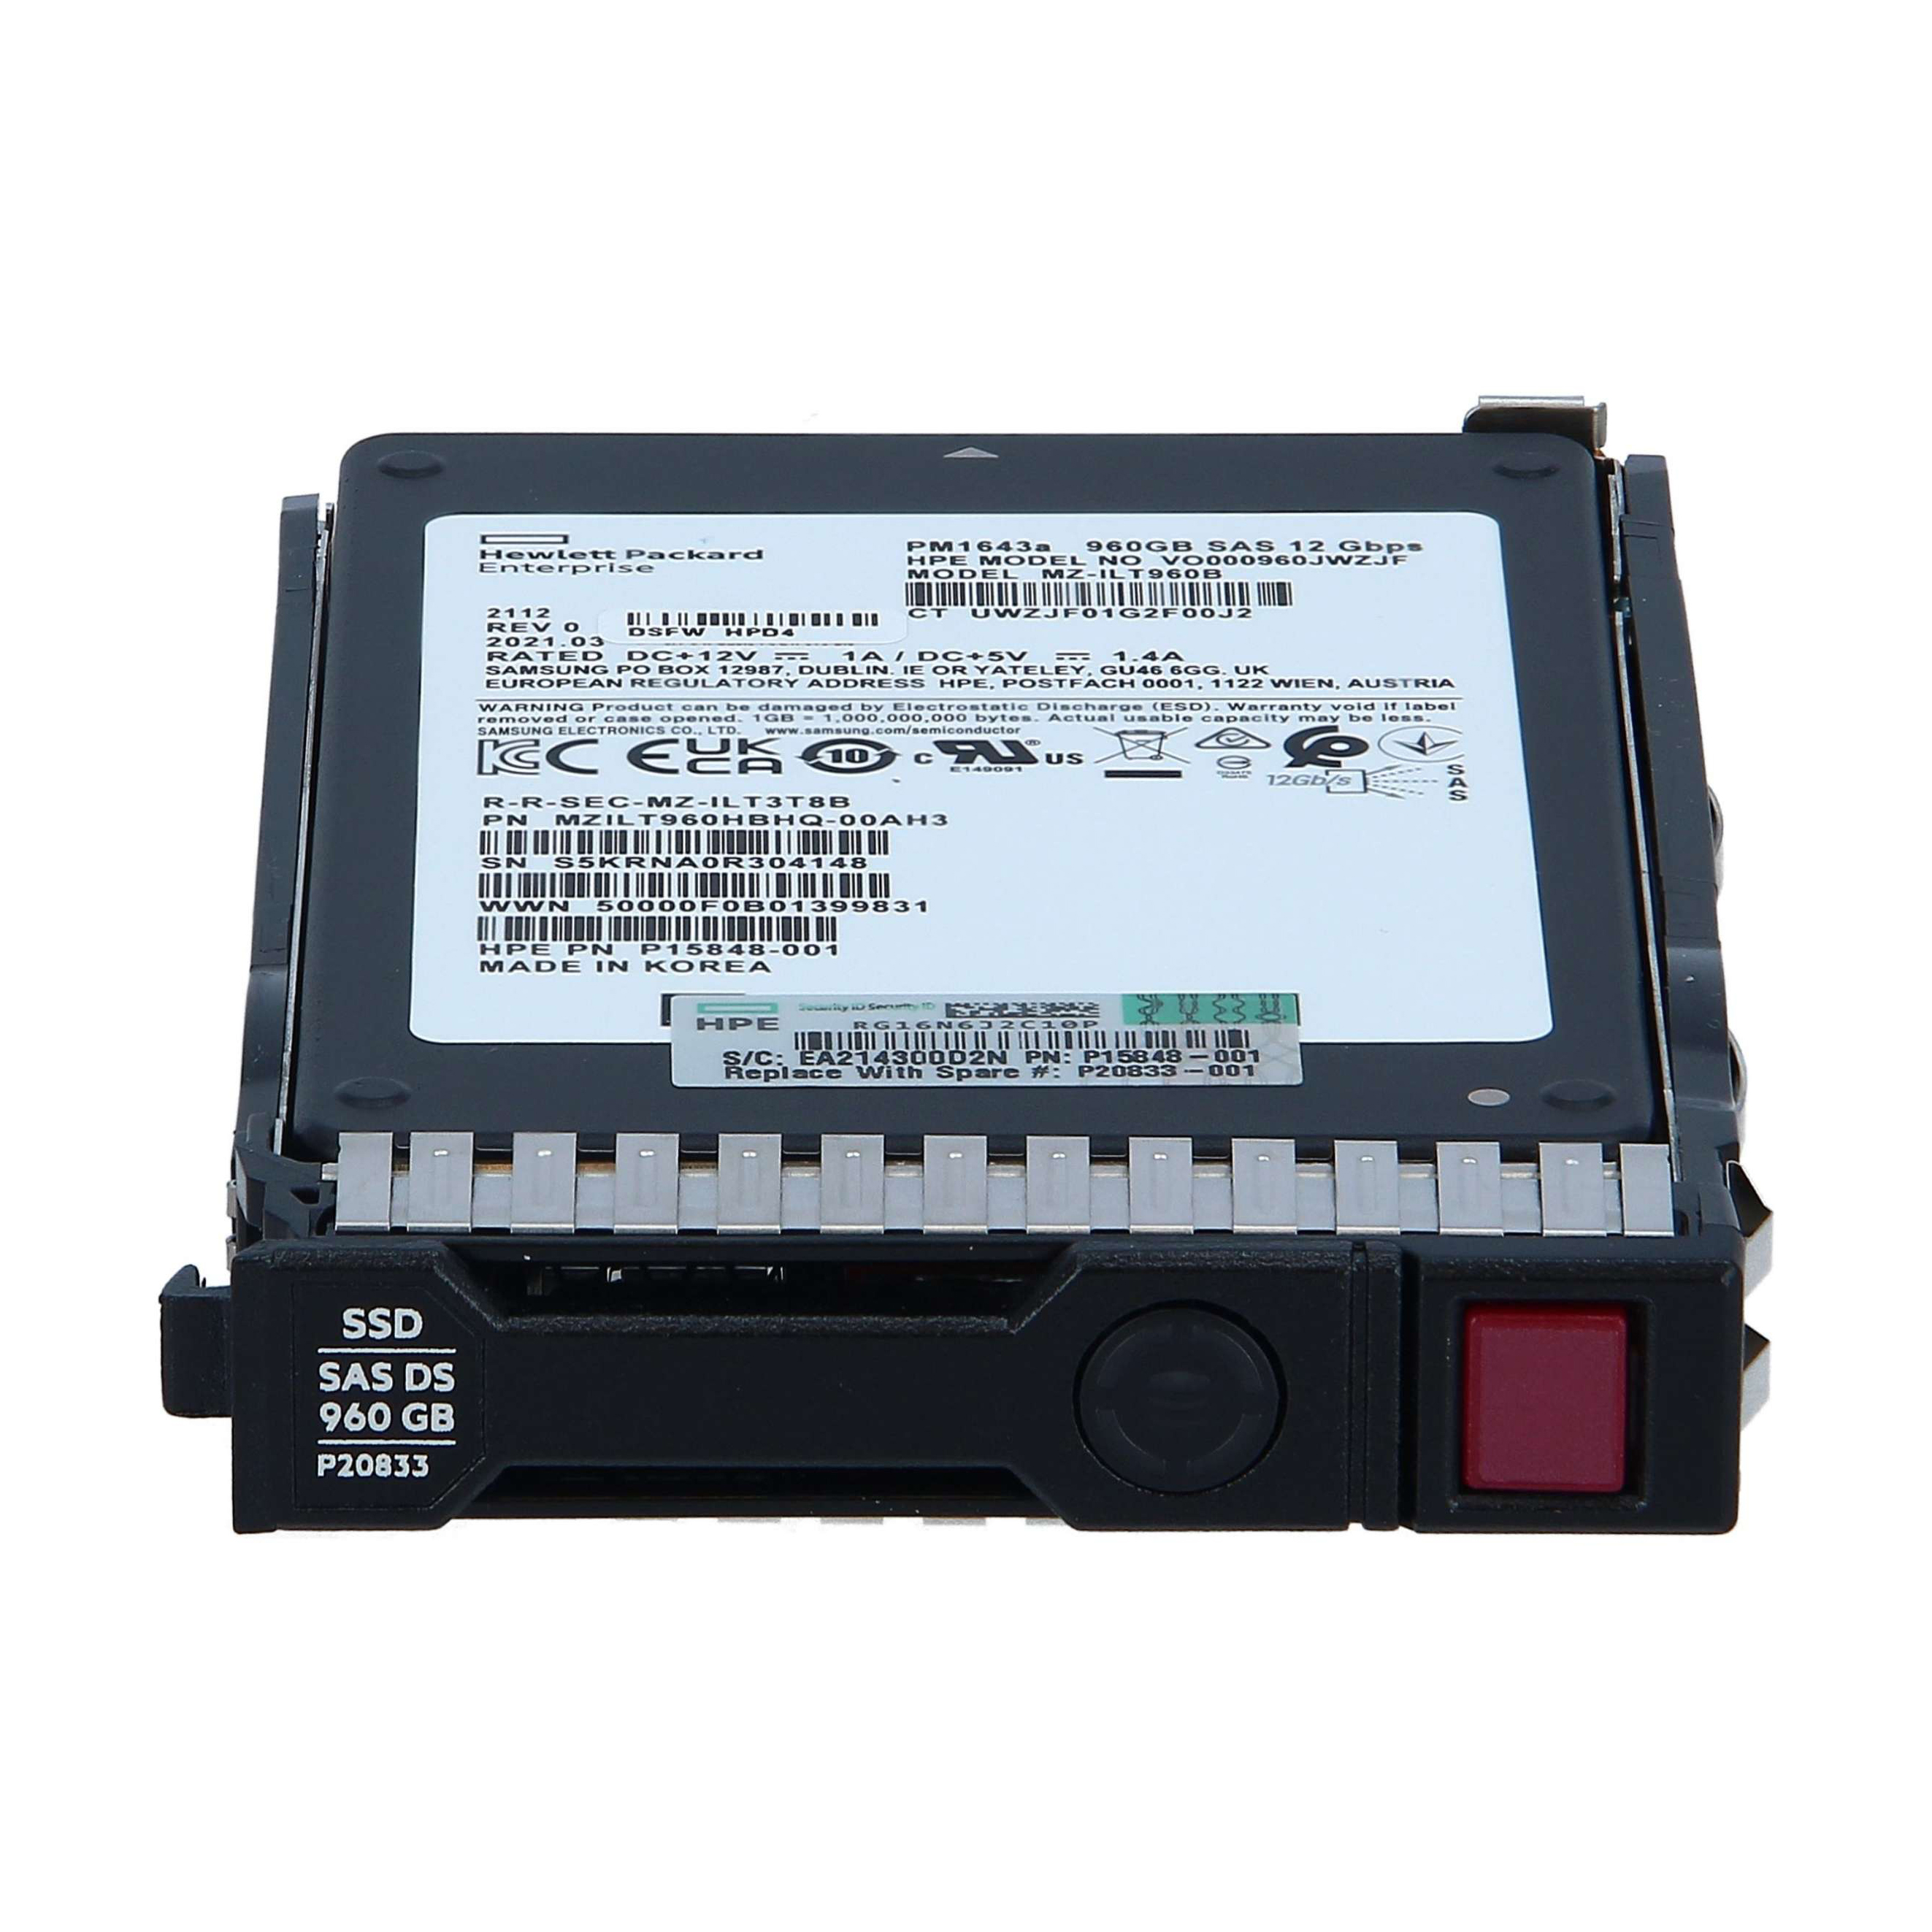 SSD HARD DISK 2.5 INCH FOR HPE SERVER 960GB SATA 6G READ INTENSIVE SFF BC MULTI VENDOR 2.5 INCH P40498-B21 ,SCSI & SAS HDD